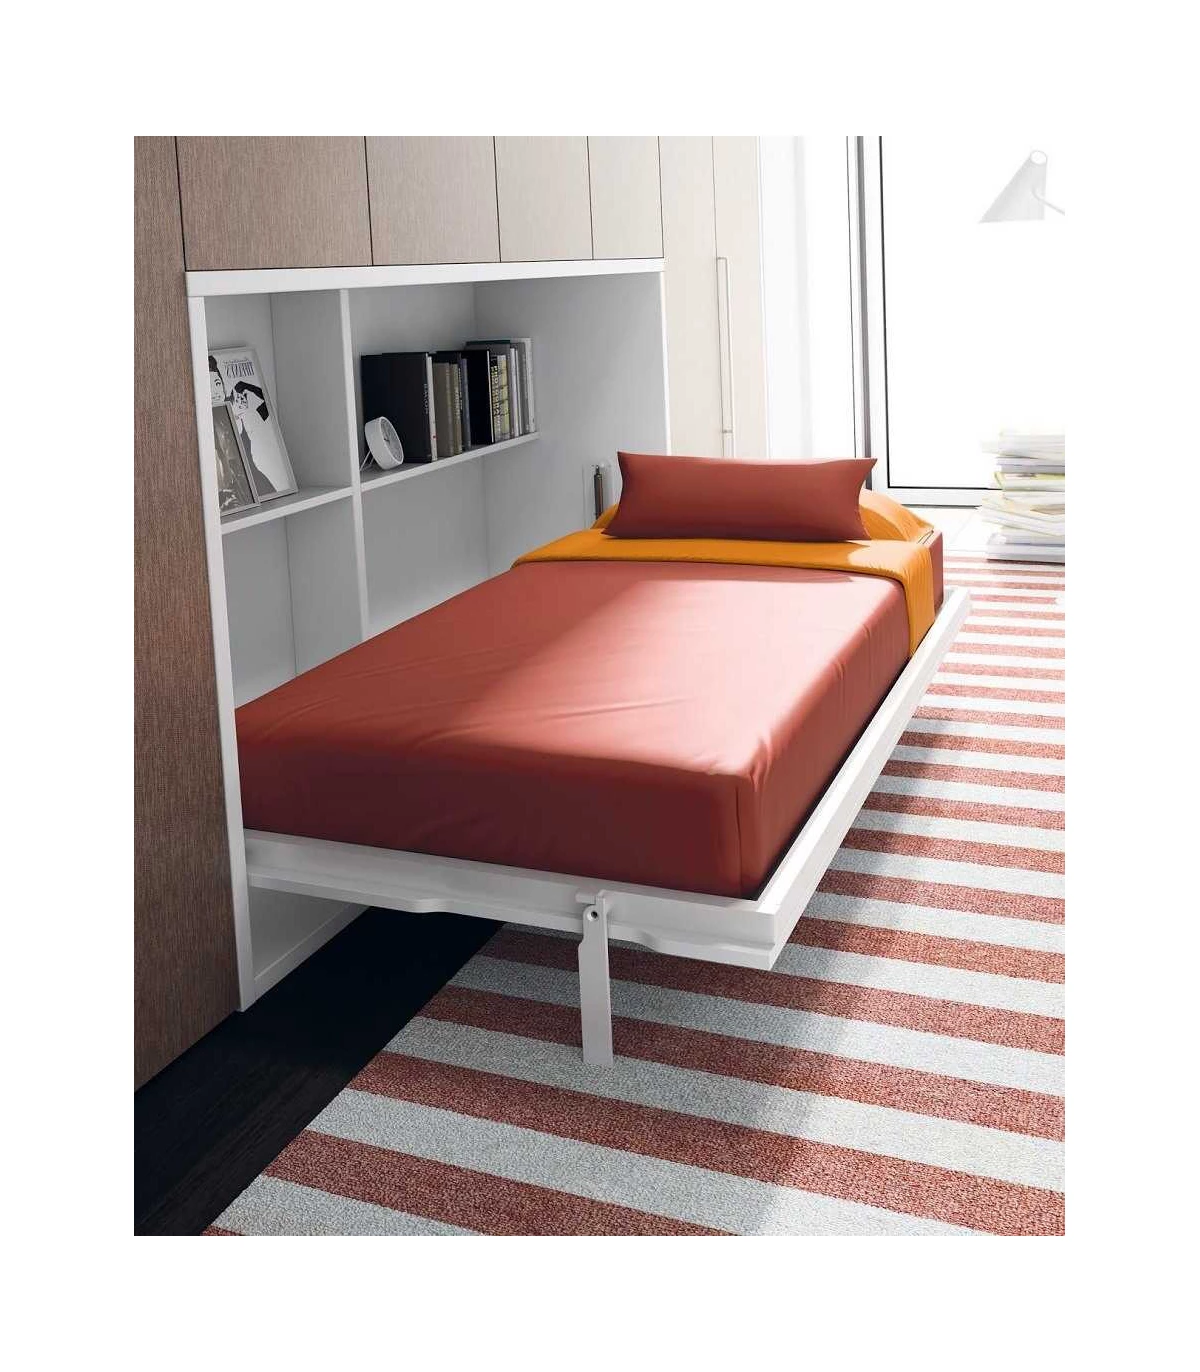 Cama abatible horizontal con escritorio, para colchón de 90 x 190.